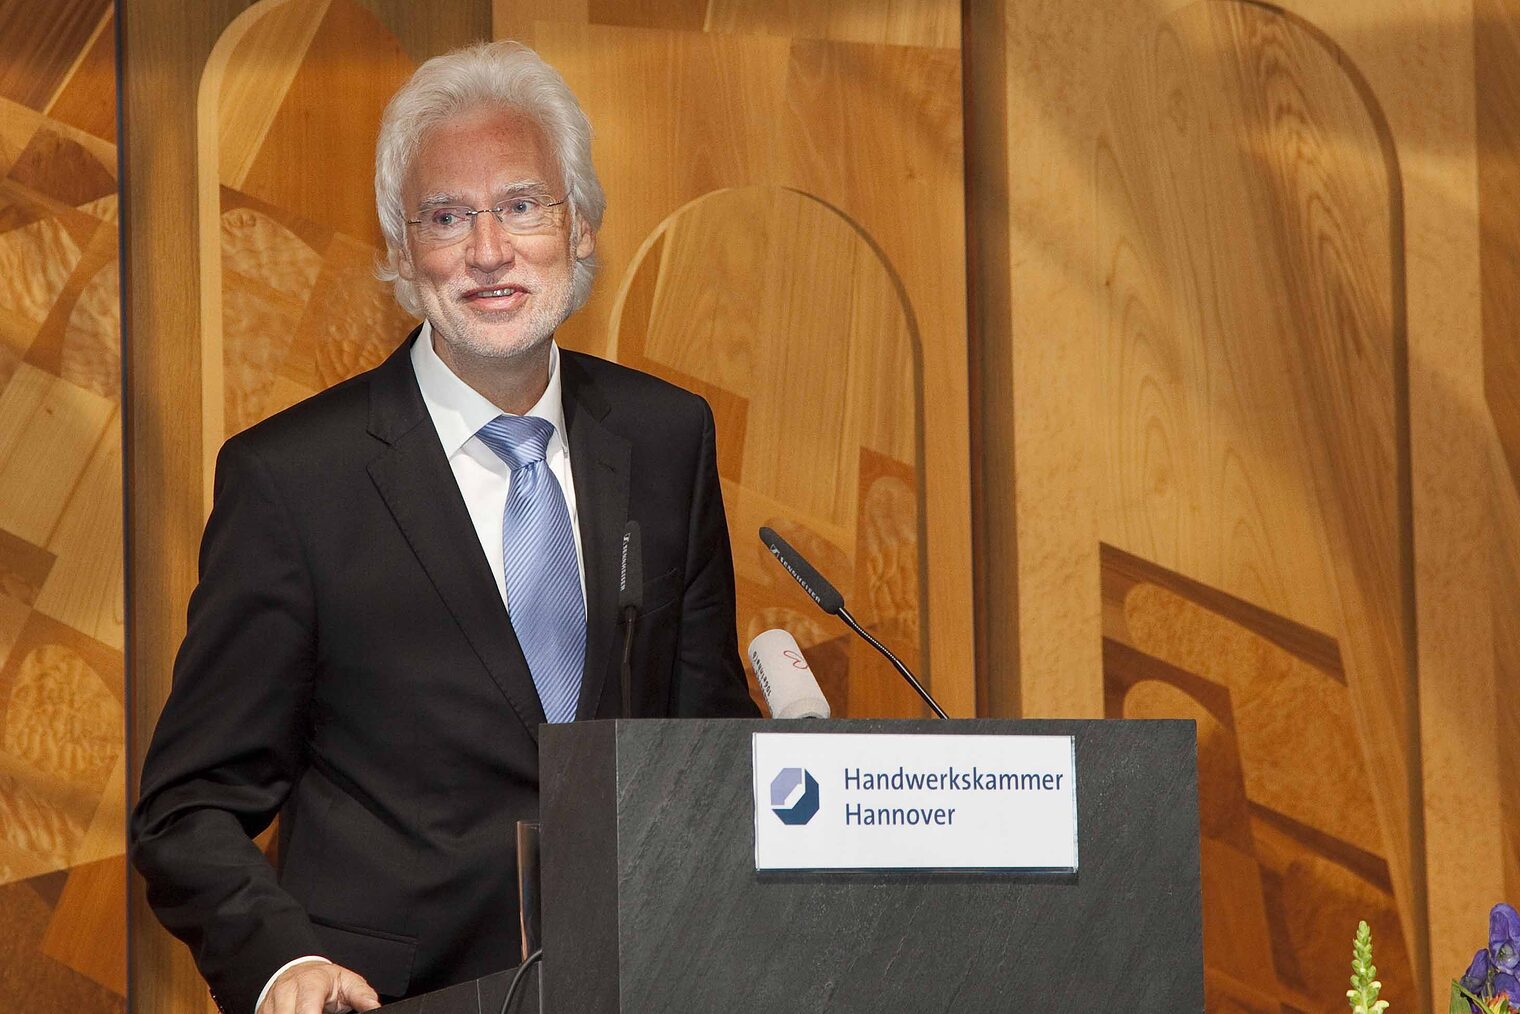 Bürgermeister Bernd Strauch überbrachte die Grüße und Glückwünsche der Landeshauptstadt Hannover